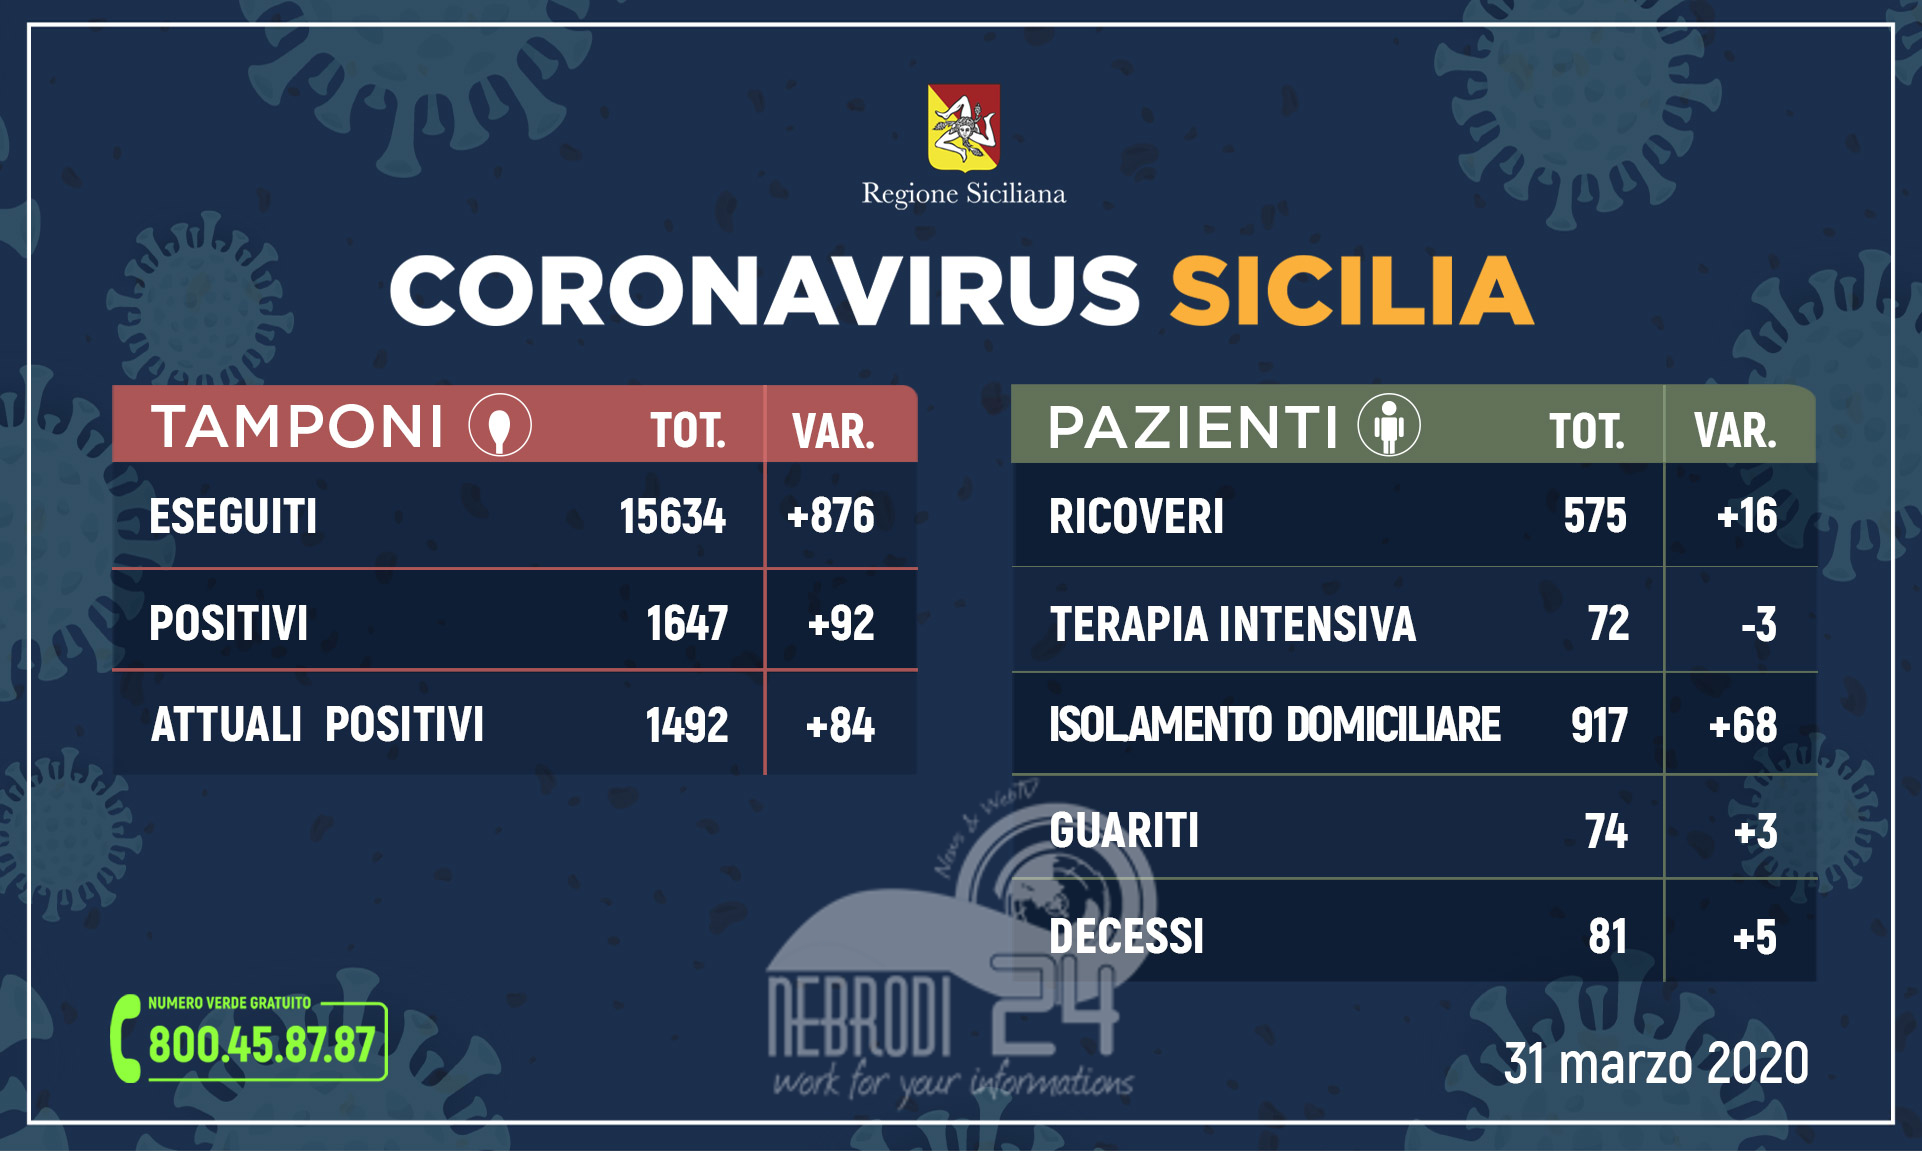 Coronavirus: l’aggiornamento in Sicilia, 1.492 attuali positivi e 74 guariti (+ 84 rispetto a ieri)